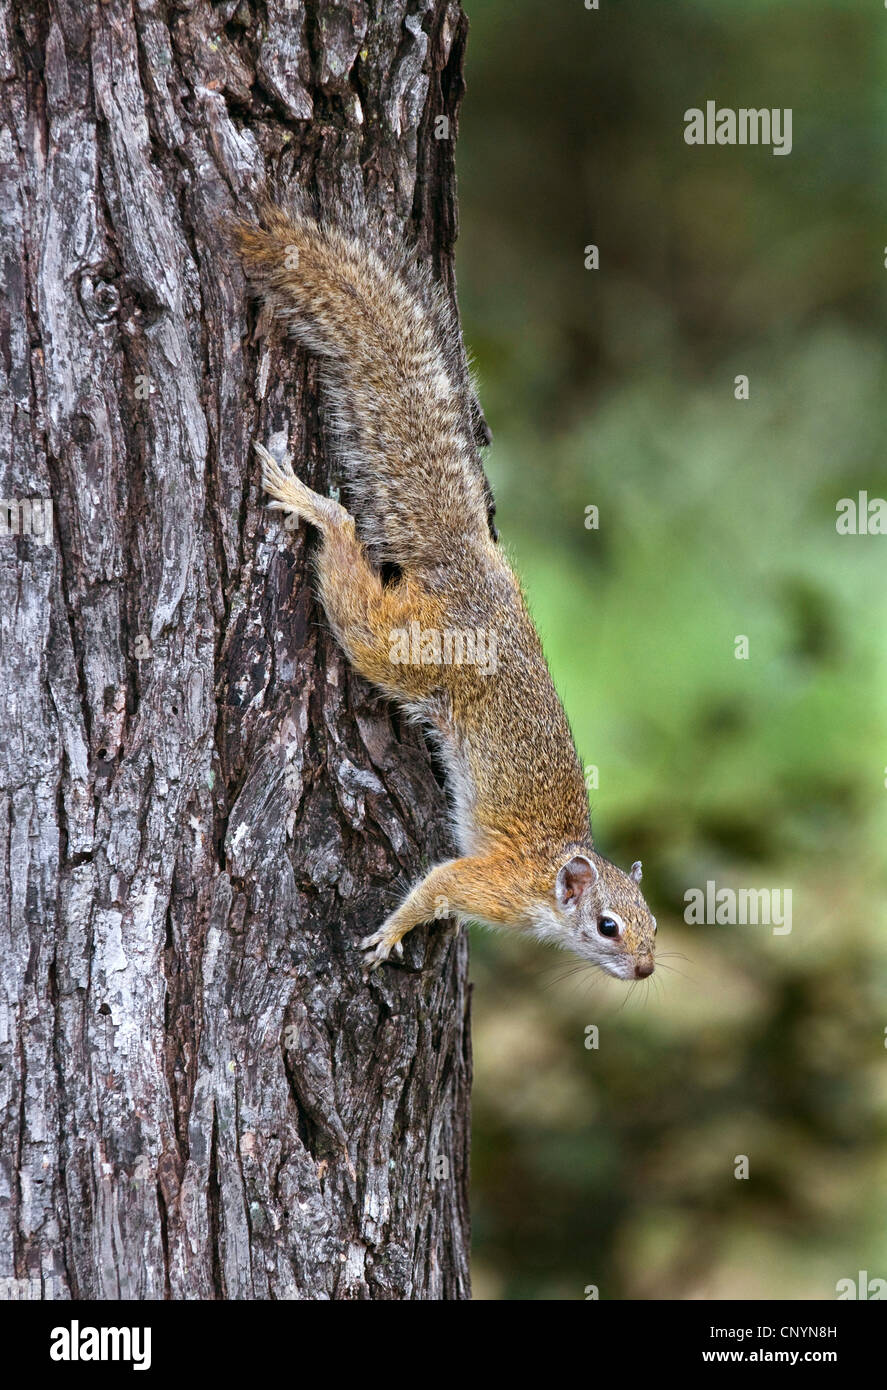 Smith's bush squirrel (Paraxerus cepapi), climbing down a tree trunk, Botswana, Chobe National Park Stock Photo